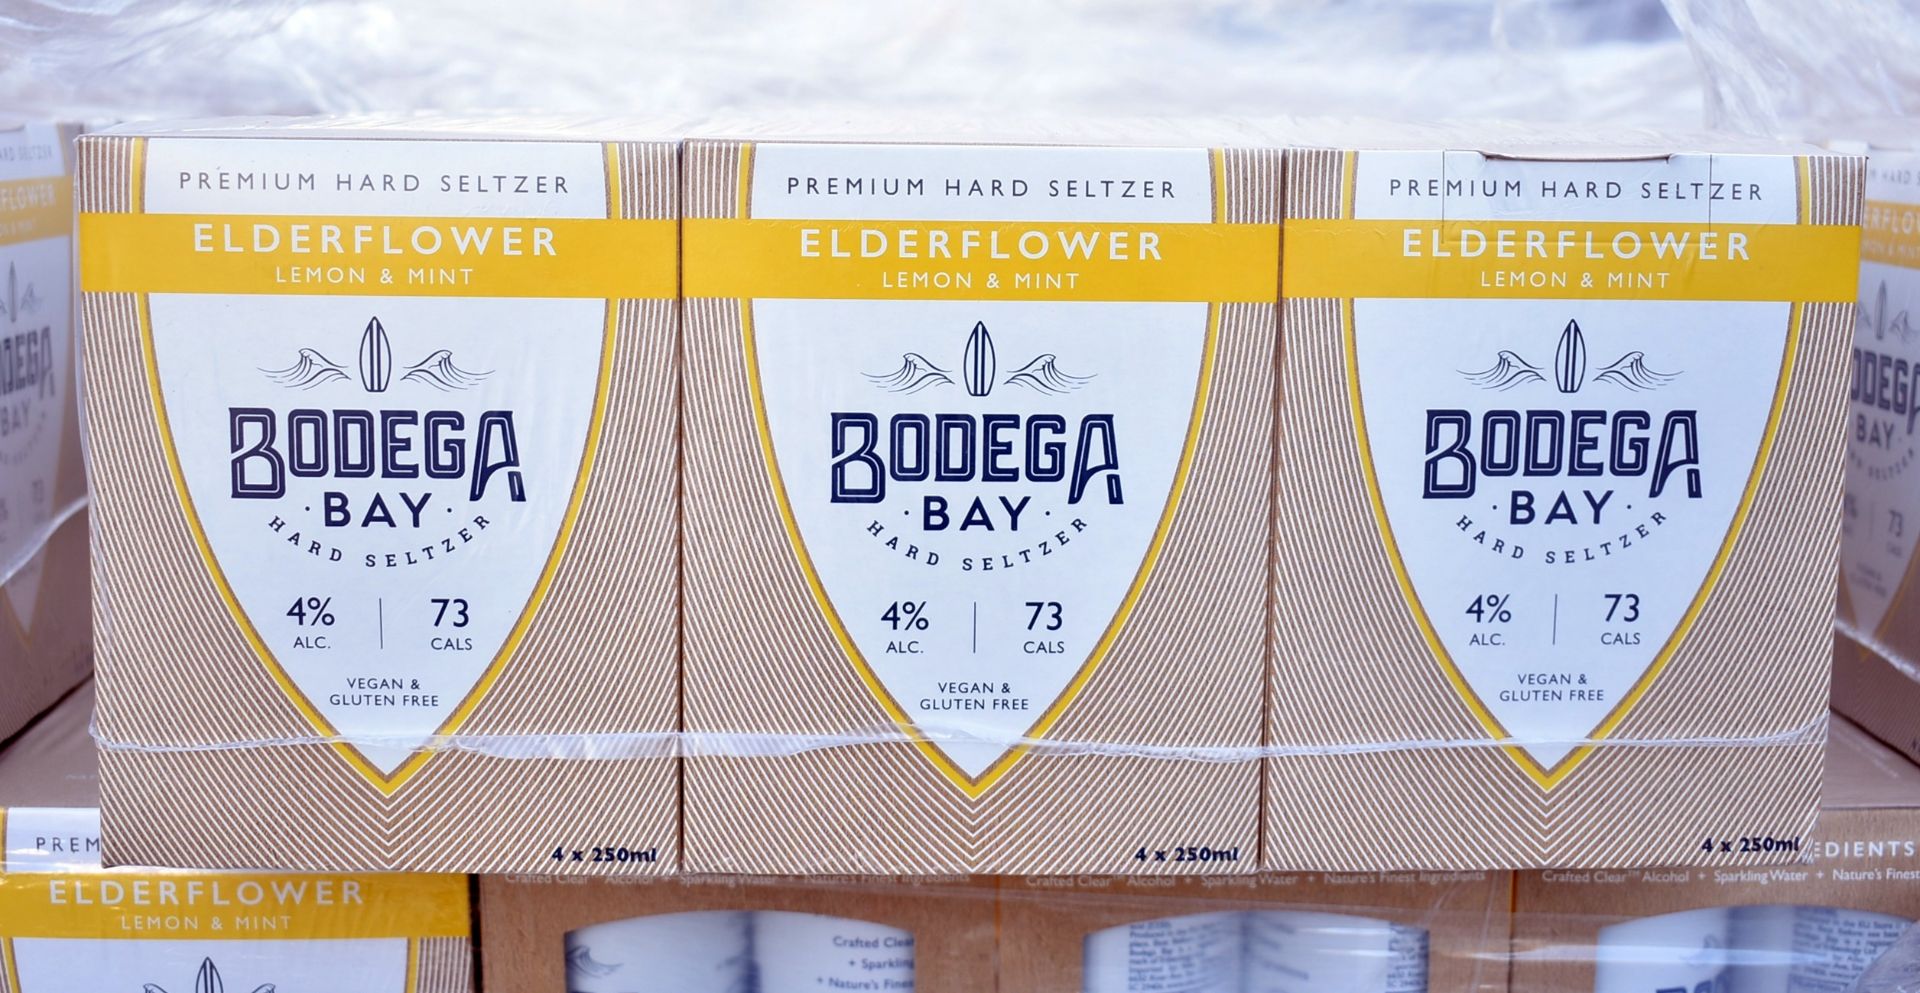 24 x Bodega Bay Hard Seltzer 250ml Alcoholic Sparkling Water Drinks - Elderflower Lemon & Mint - - Image 2 of 10